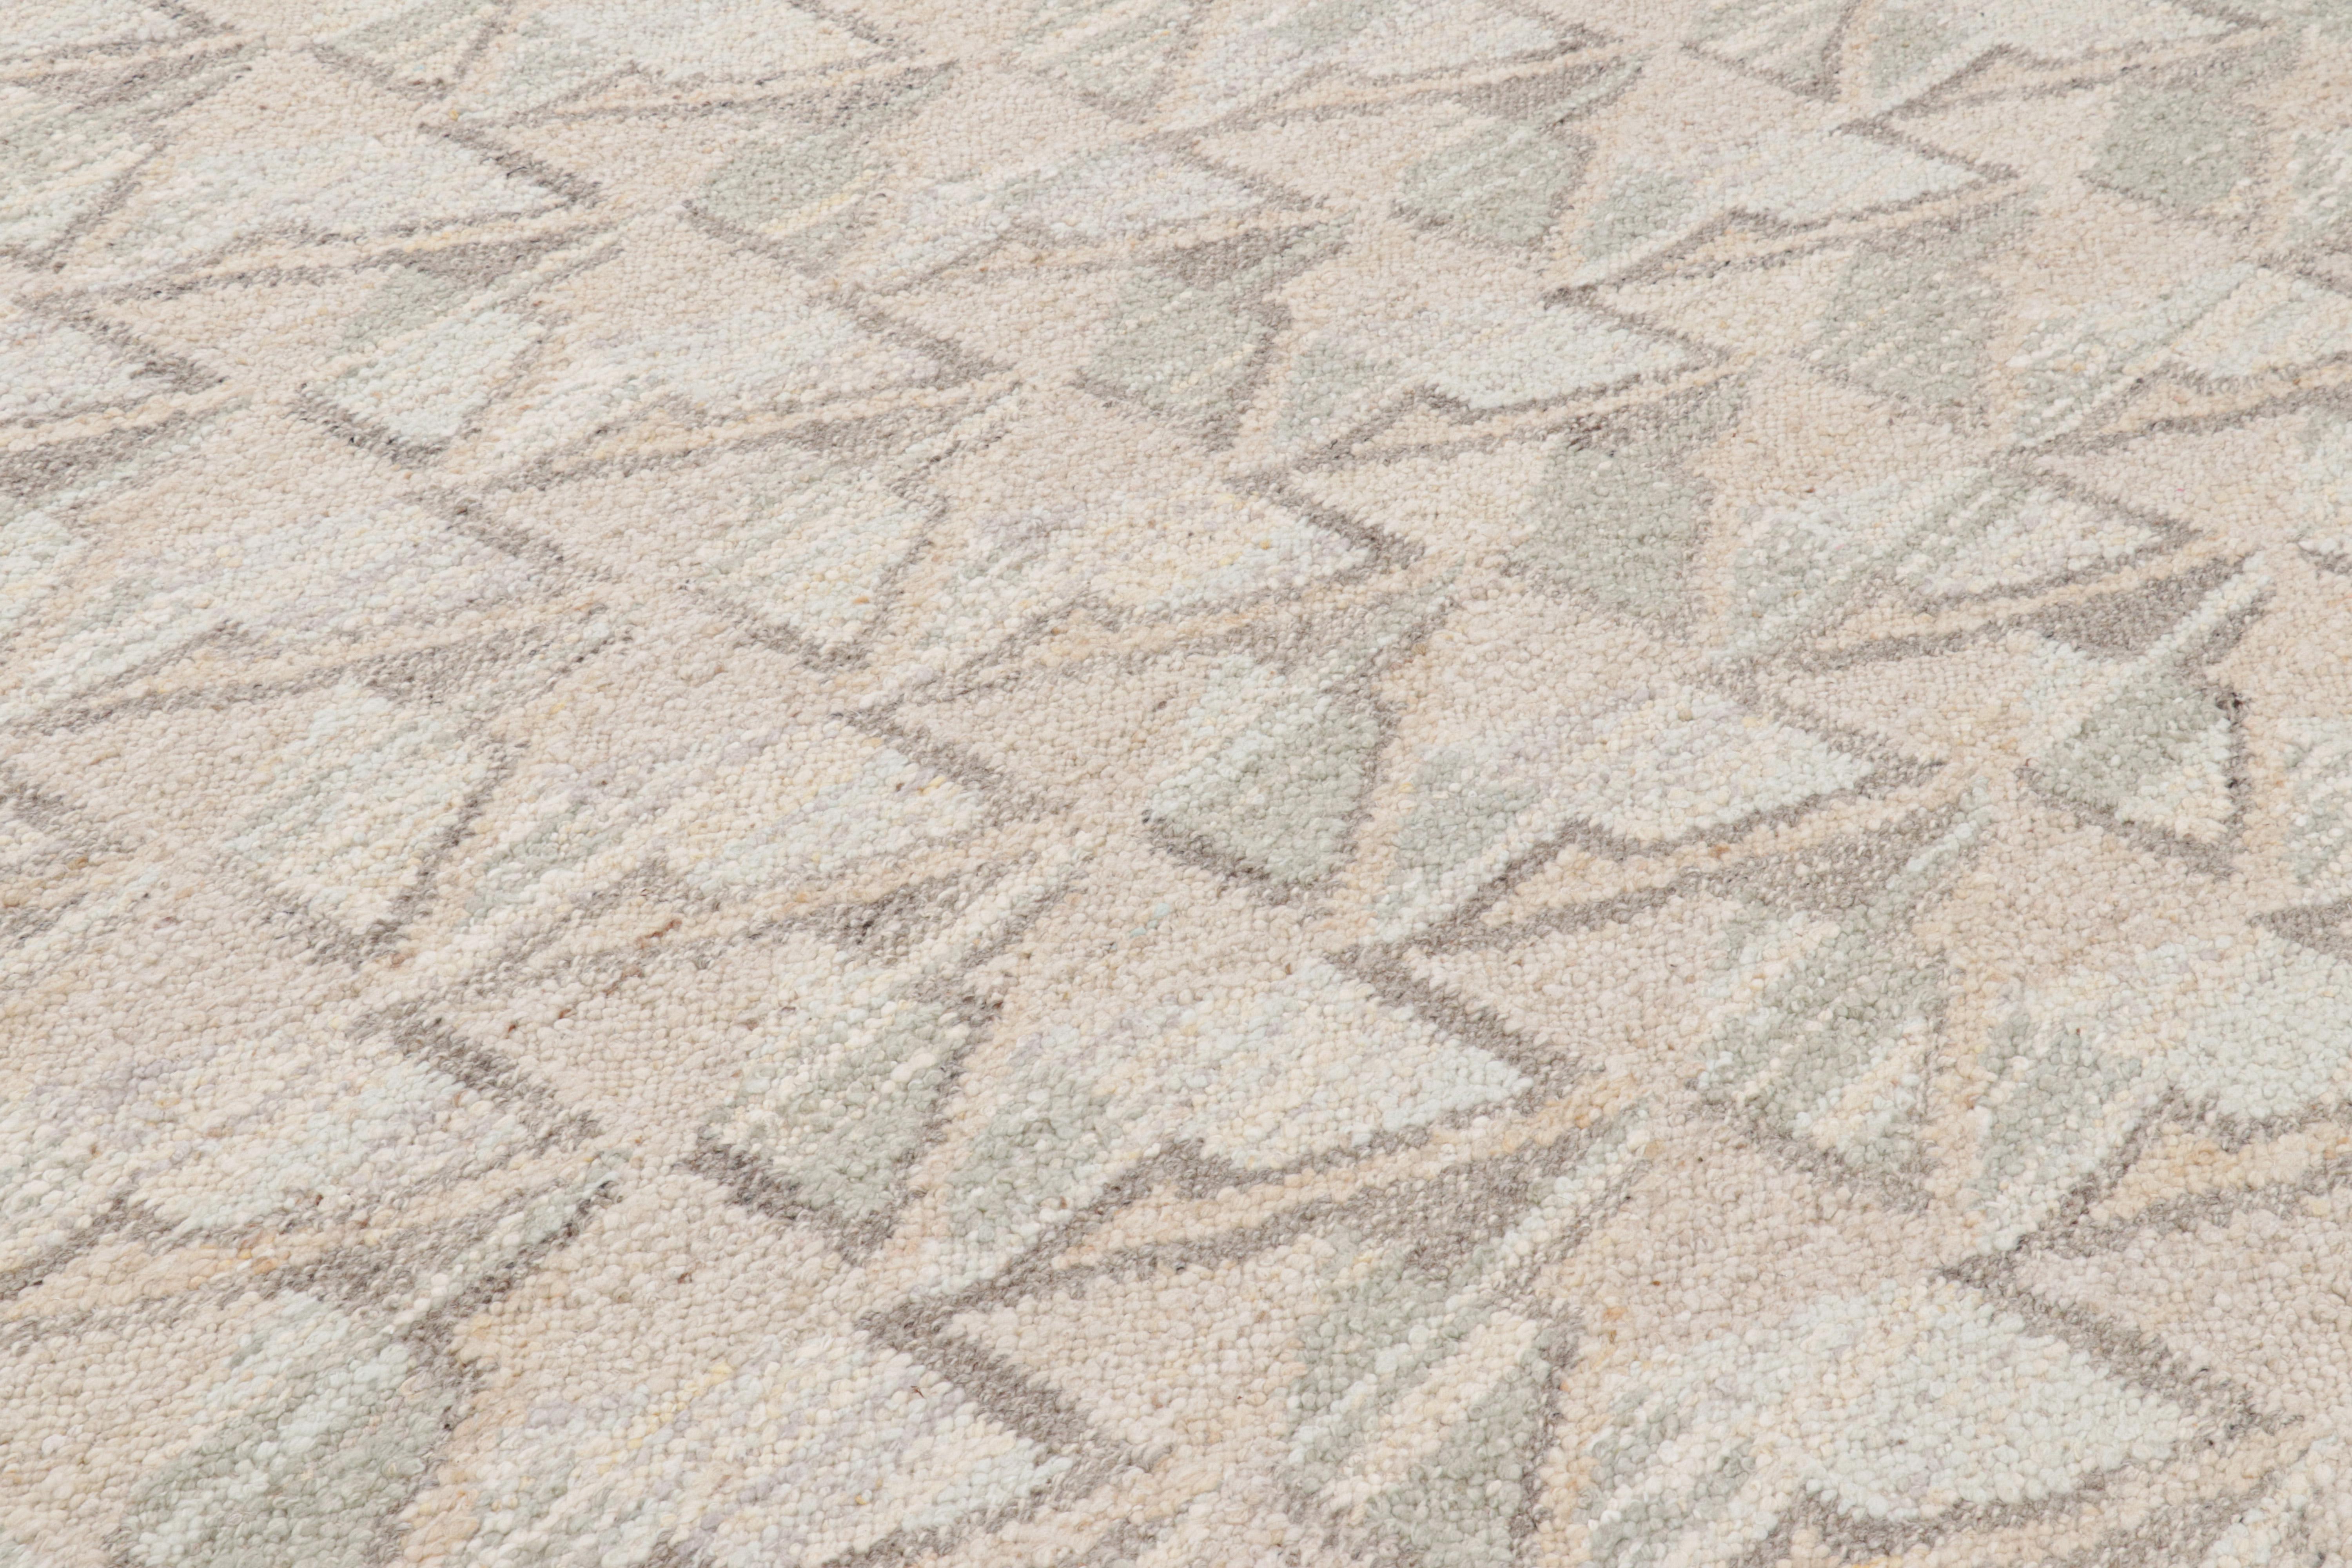 Ce tapis de style suédois 8x10, tissé à la main en laine, est issu de la texture inventive 